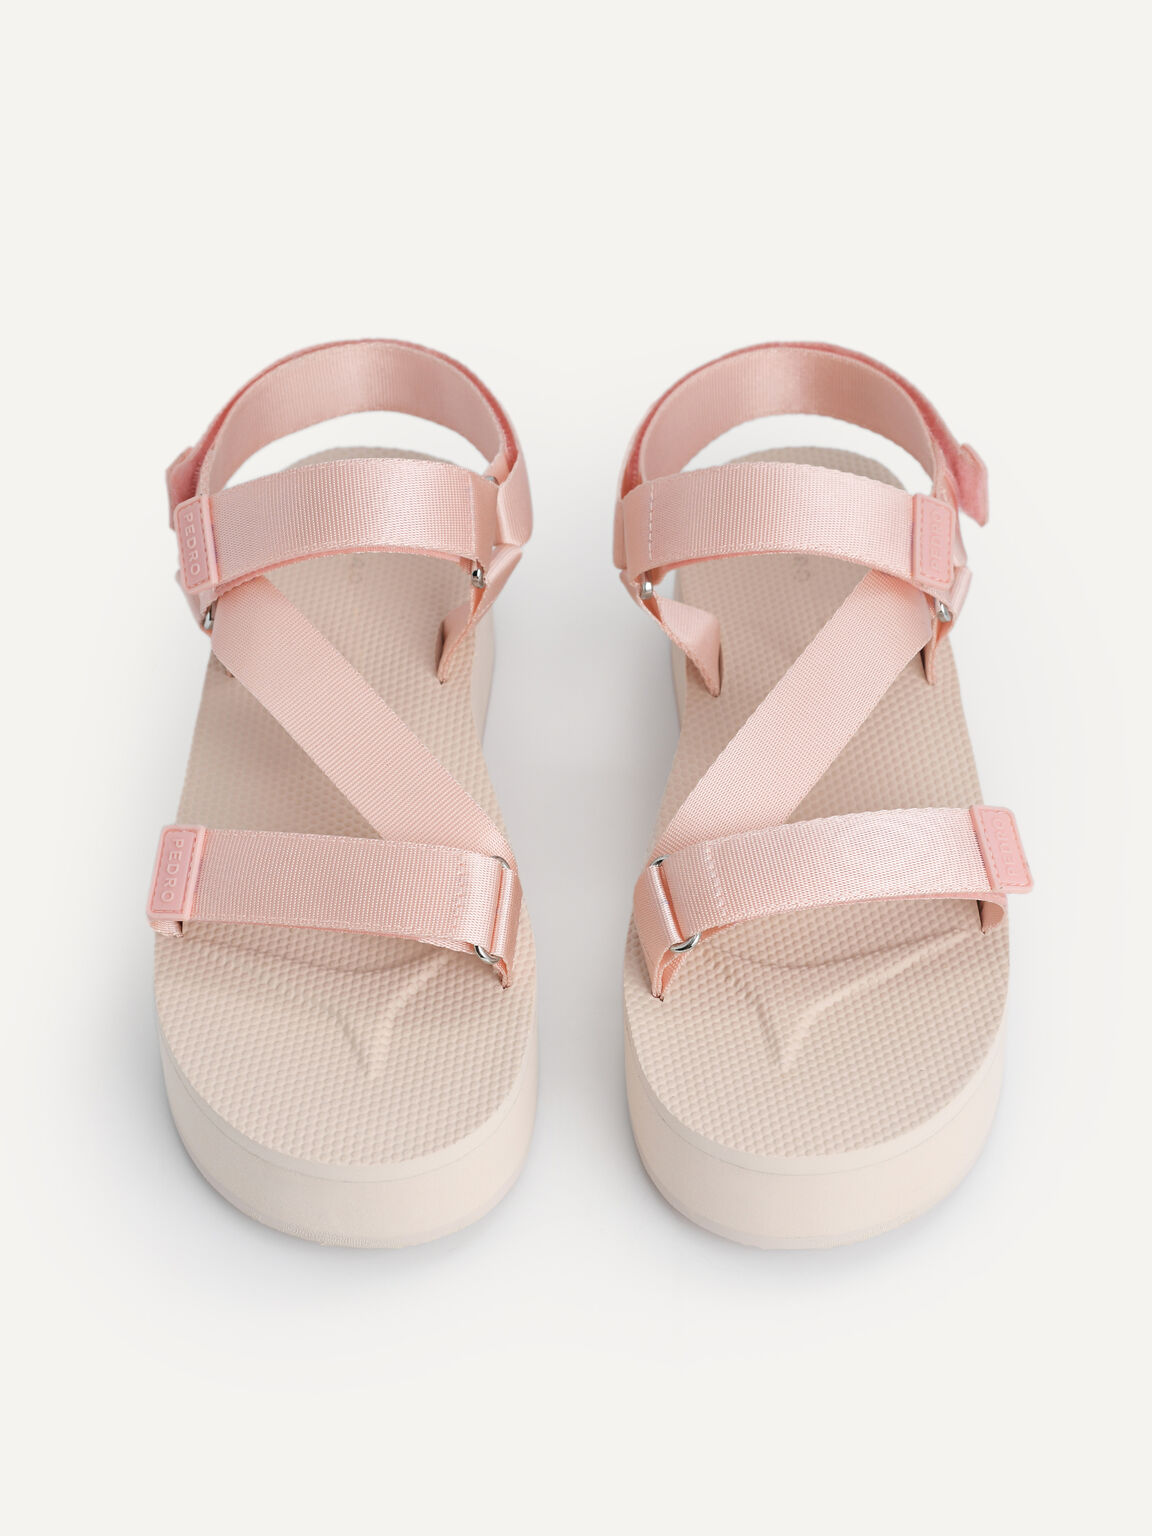 Flatform Sandals, Blush, hi-res